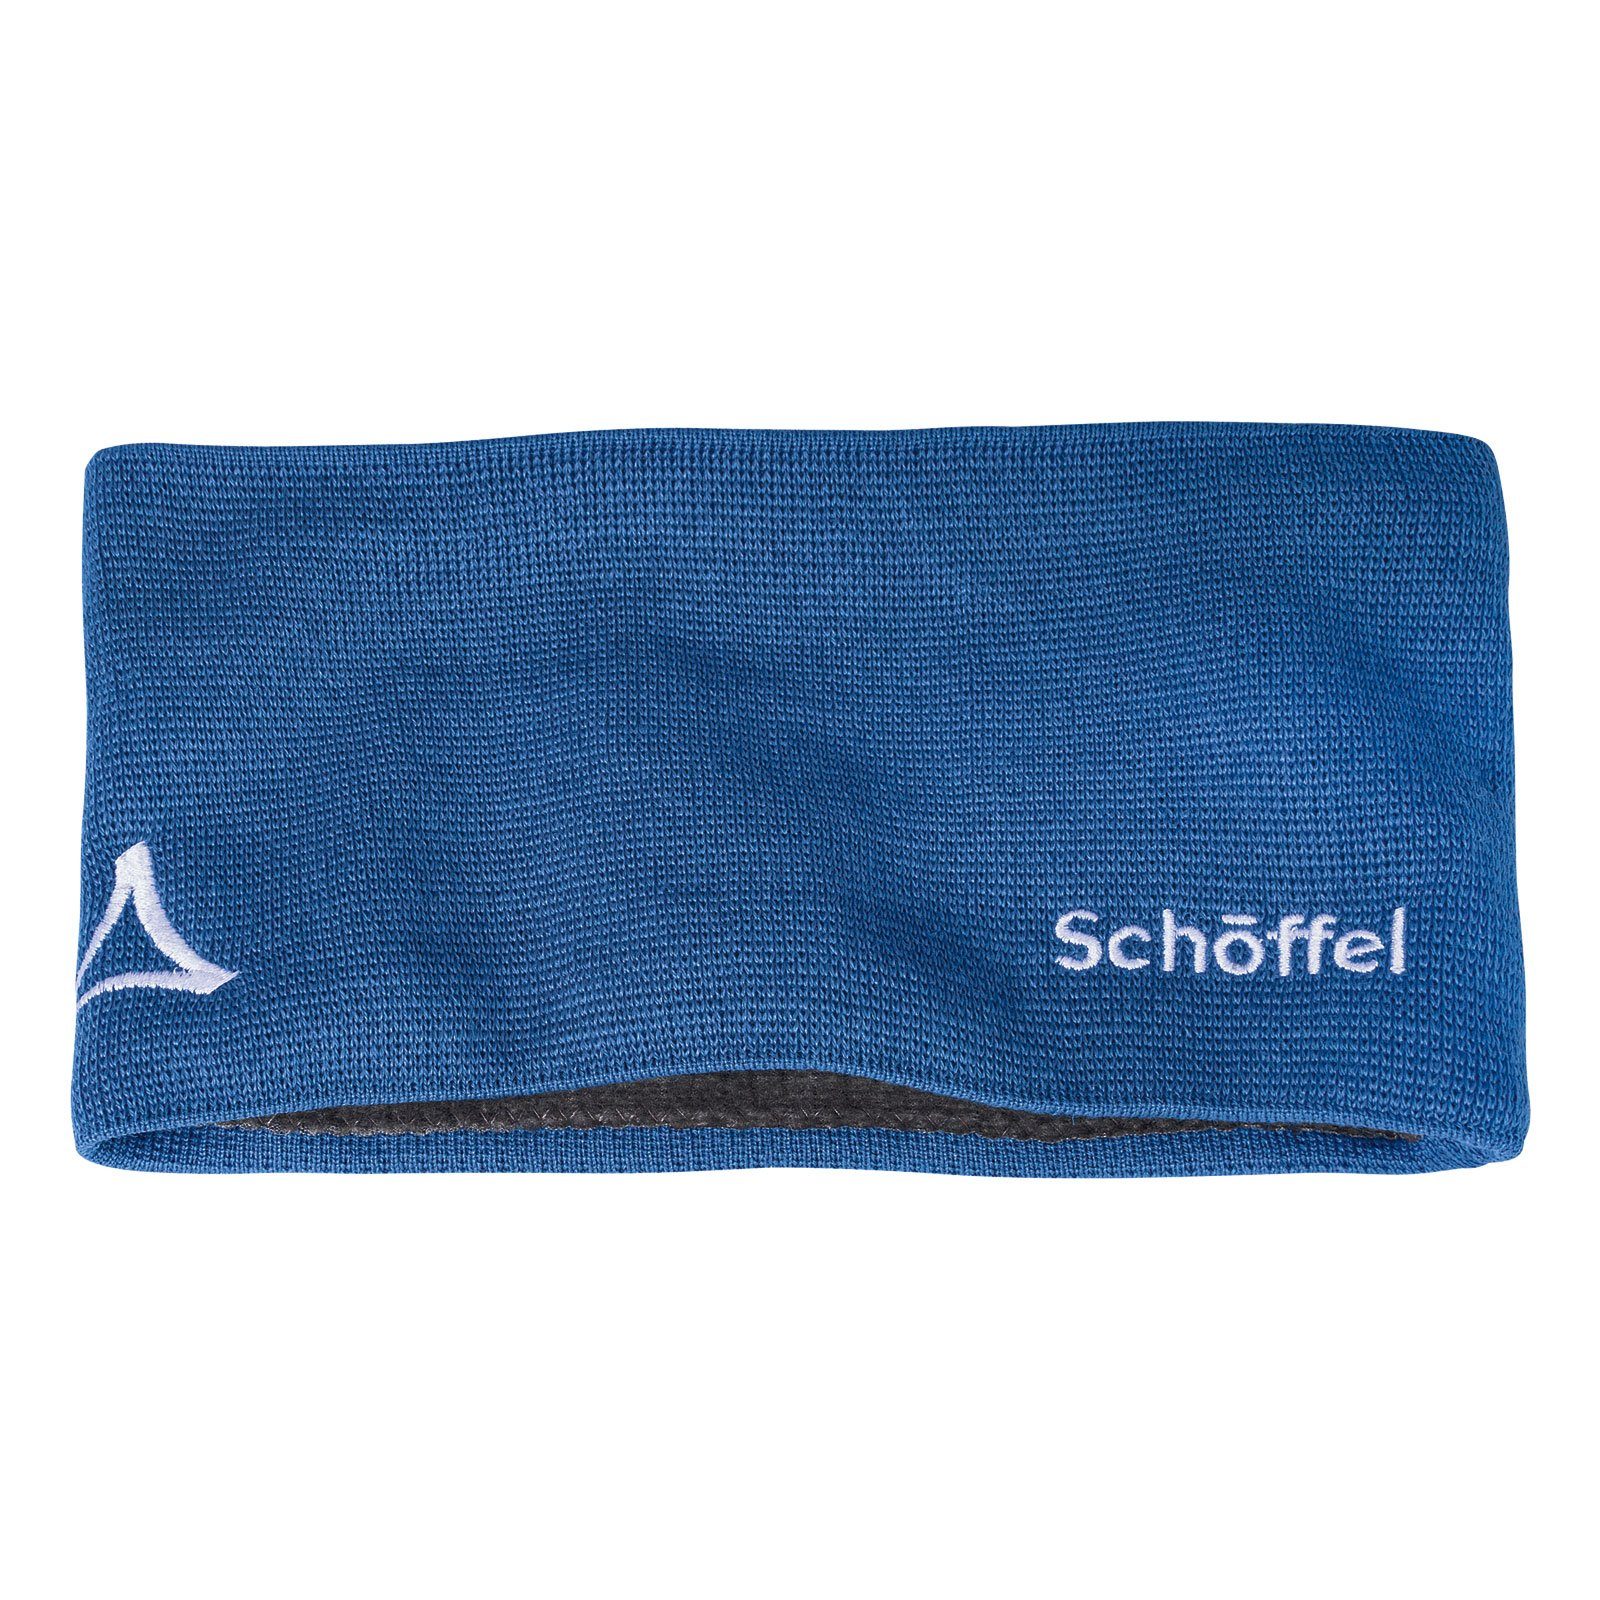 Schöffel Stirnband Knitted Headband Blau mit Fornet Markenlogo